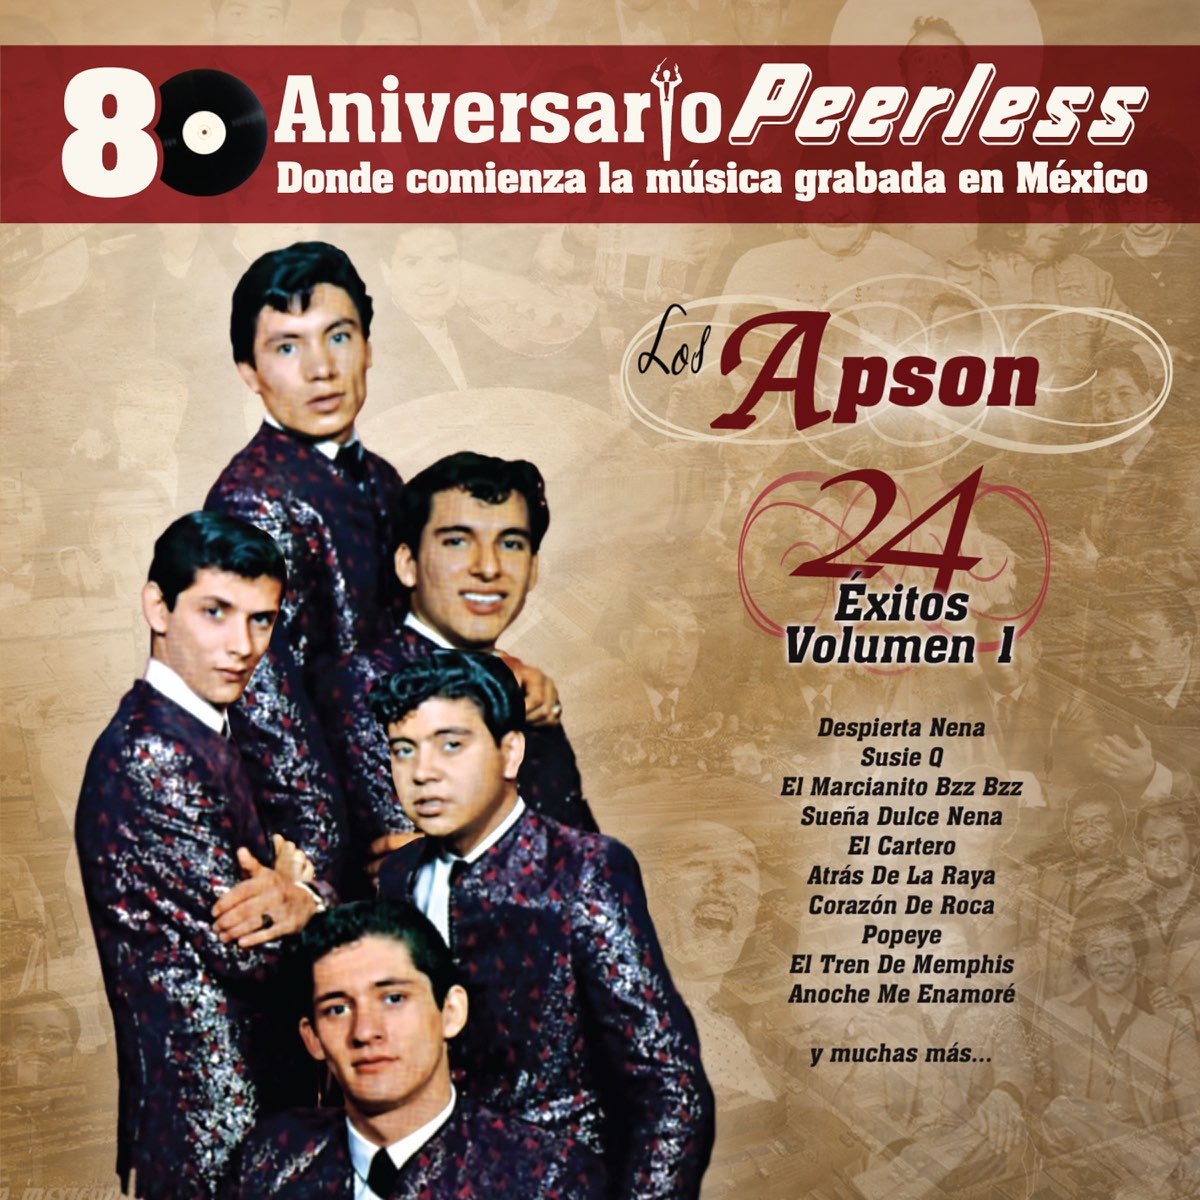 peerless 80 aniversario 24 Éxitos los apson vol 1 album by los